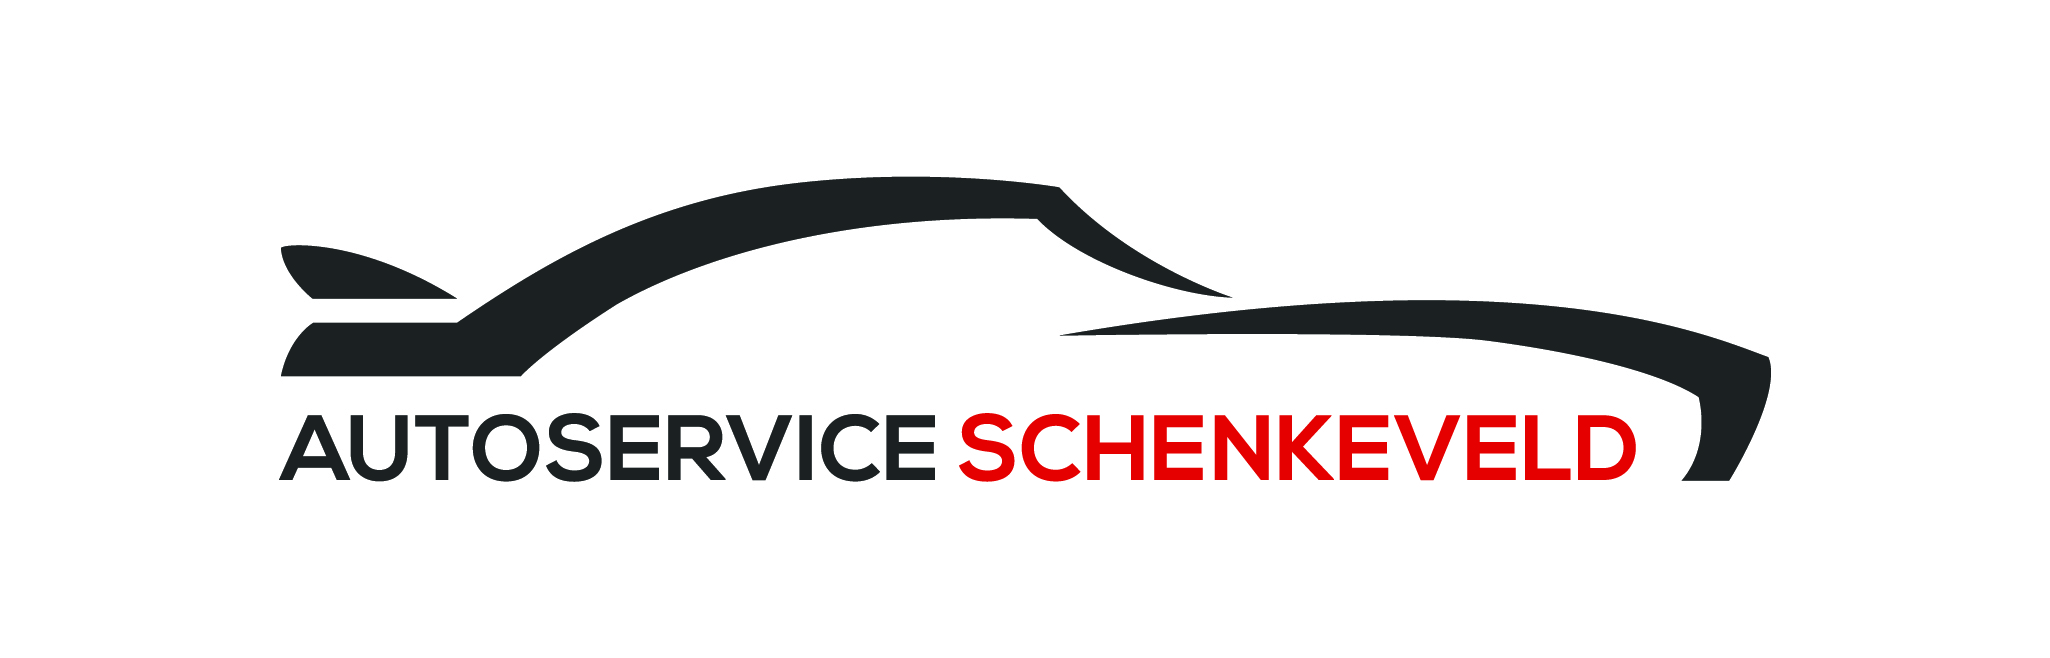 Autoservice Schenkeveld